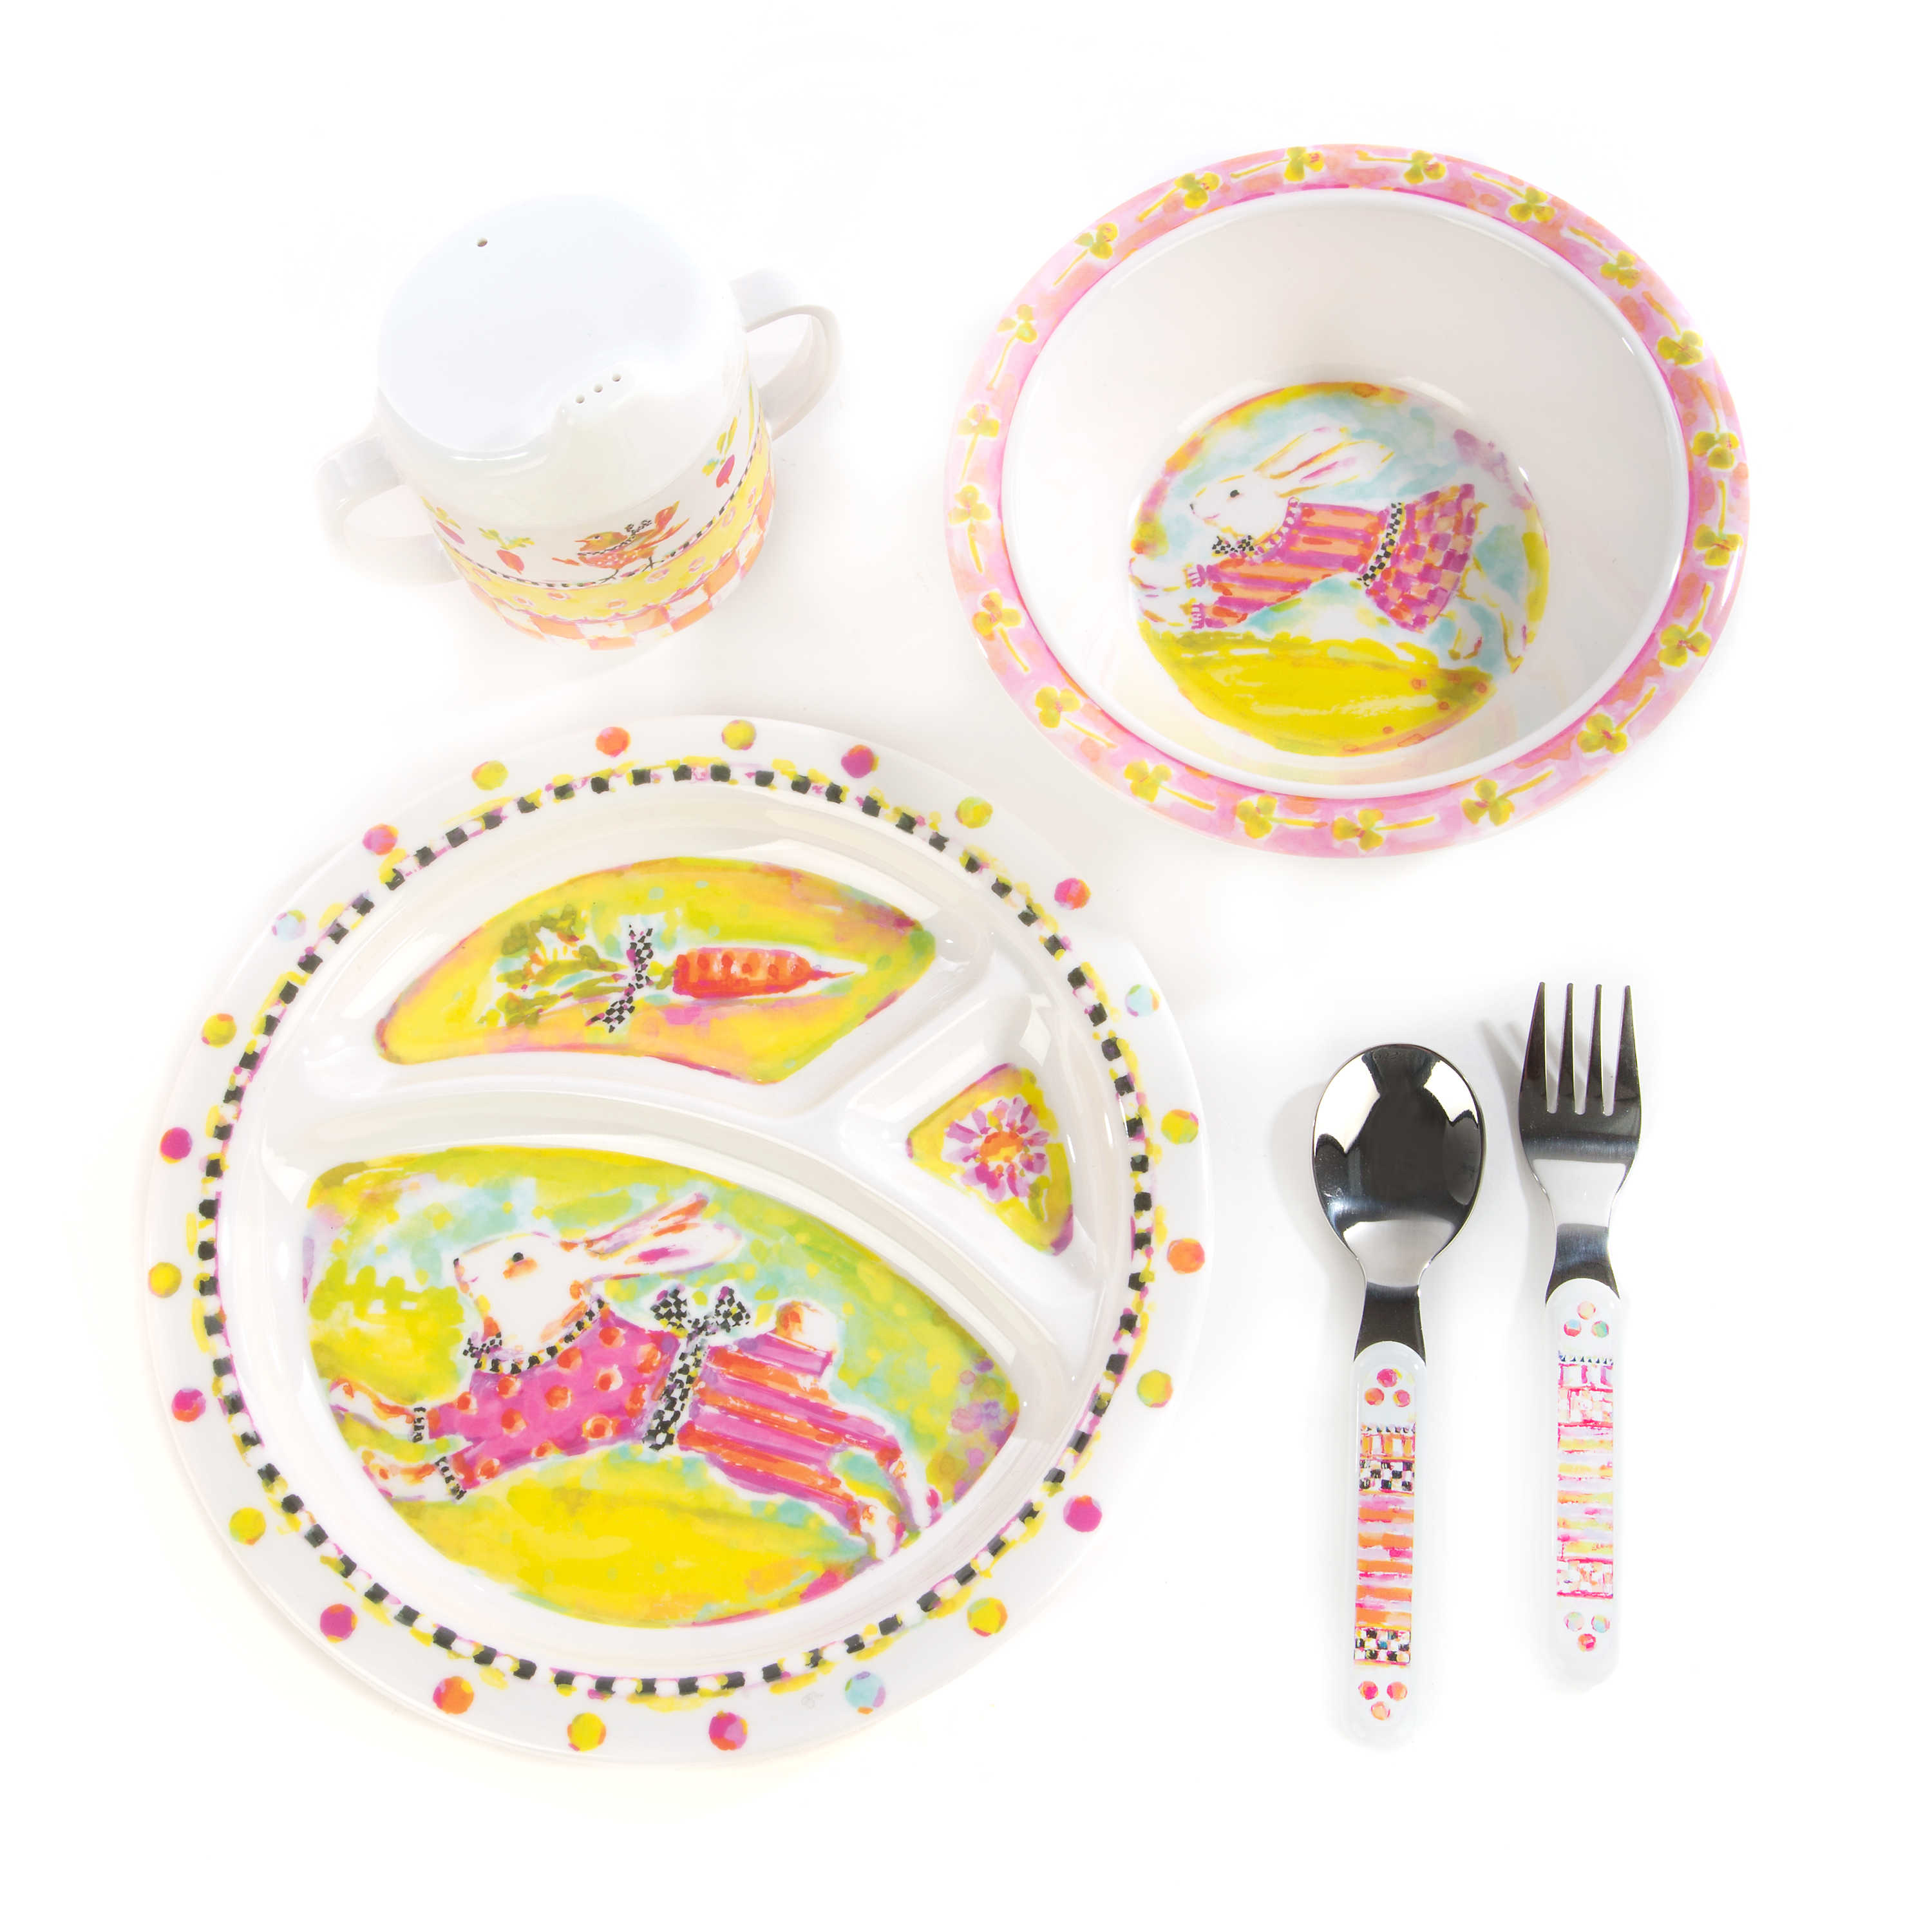 Bunny Toddler's Dinnerware Set mackenzie-childs Panama 0